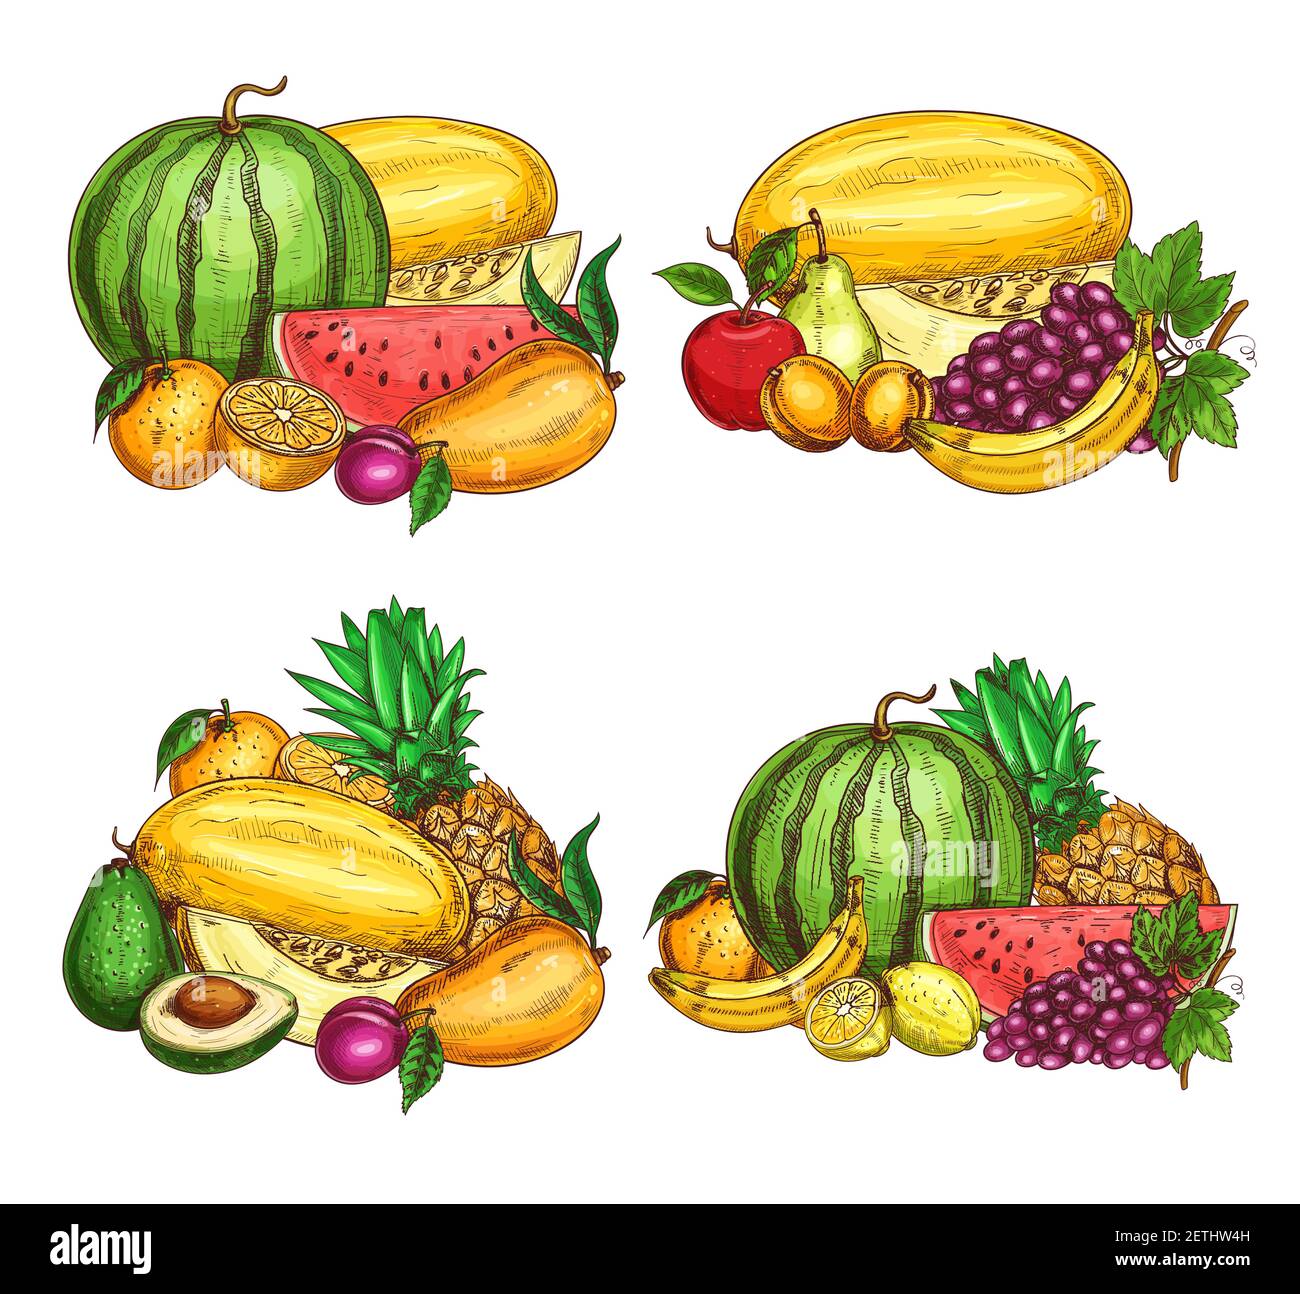 Obst Bauernhof frische Ernte Skizze. Reife Wassermelone, Melone und Papaya, Orange, Pflaume und Apfel, Birne, Trauben und Banane, Avocado, Ananas und Stock Vektor